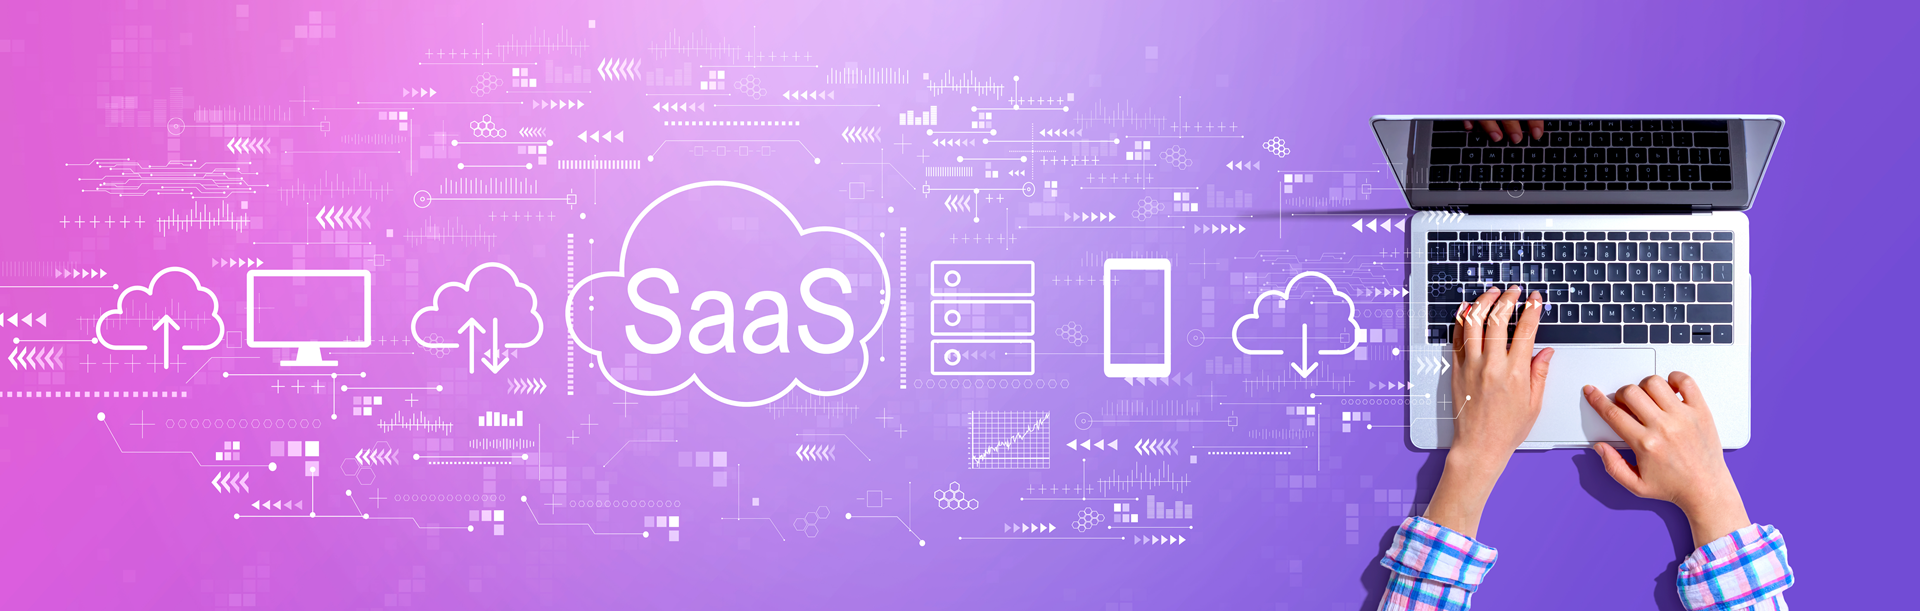 Tendencias del SaaS en el futuro: El futuro del software como servicio